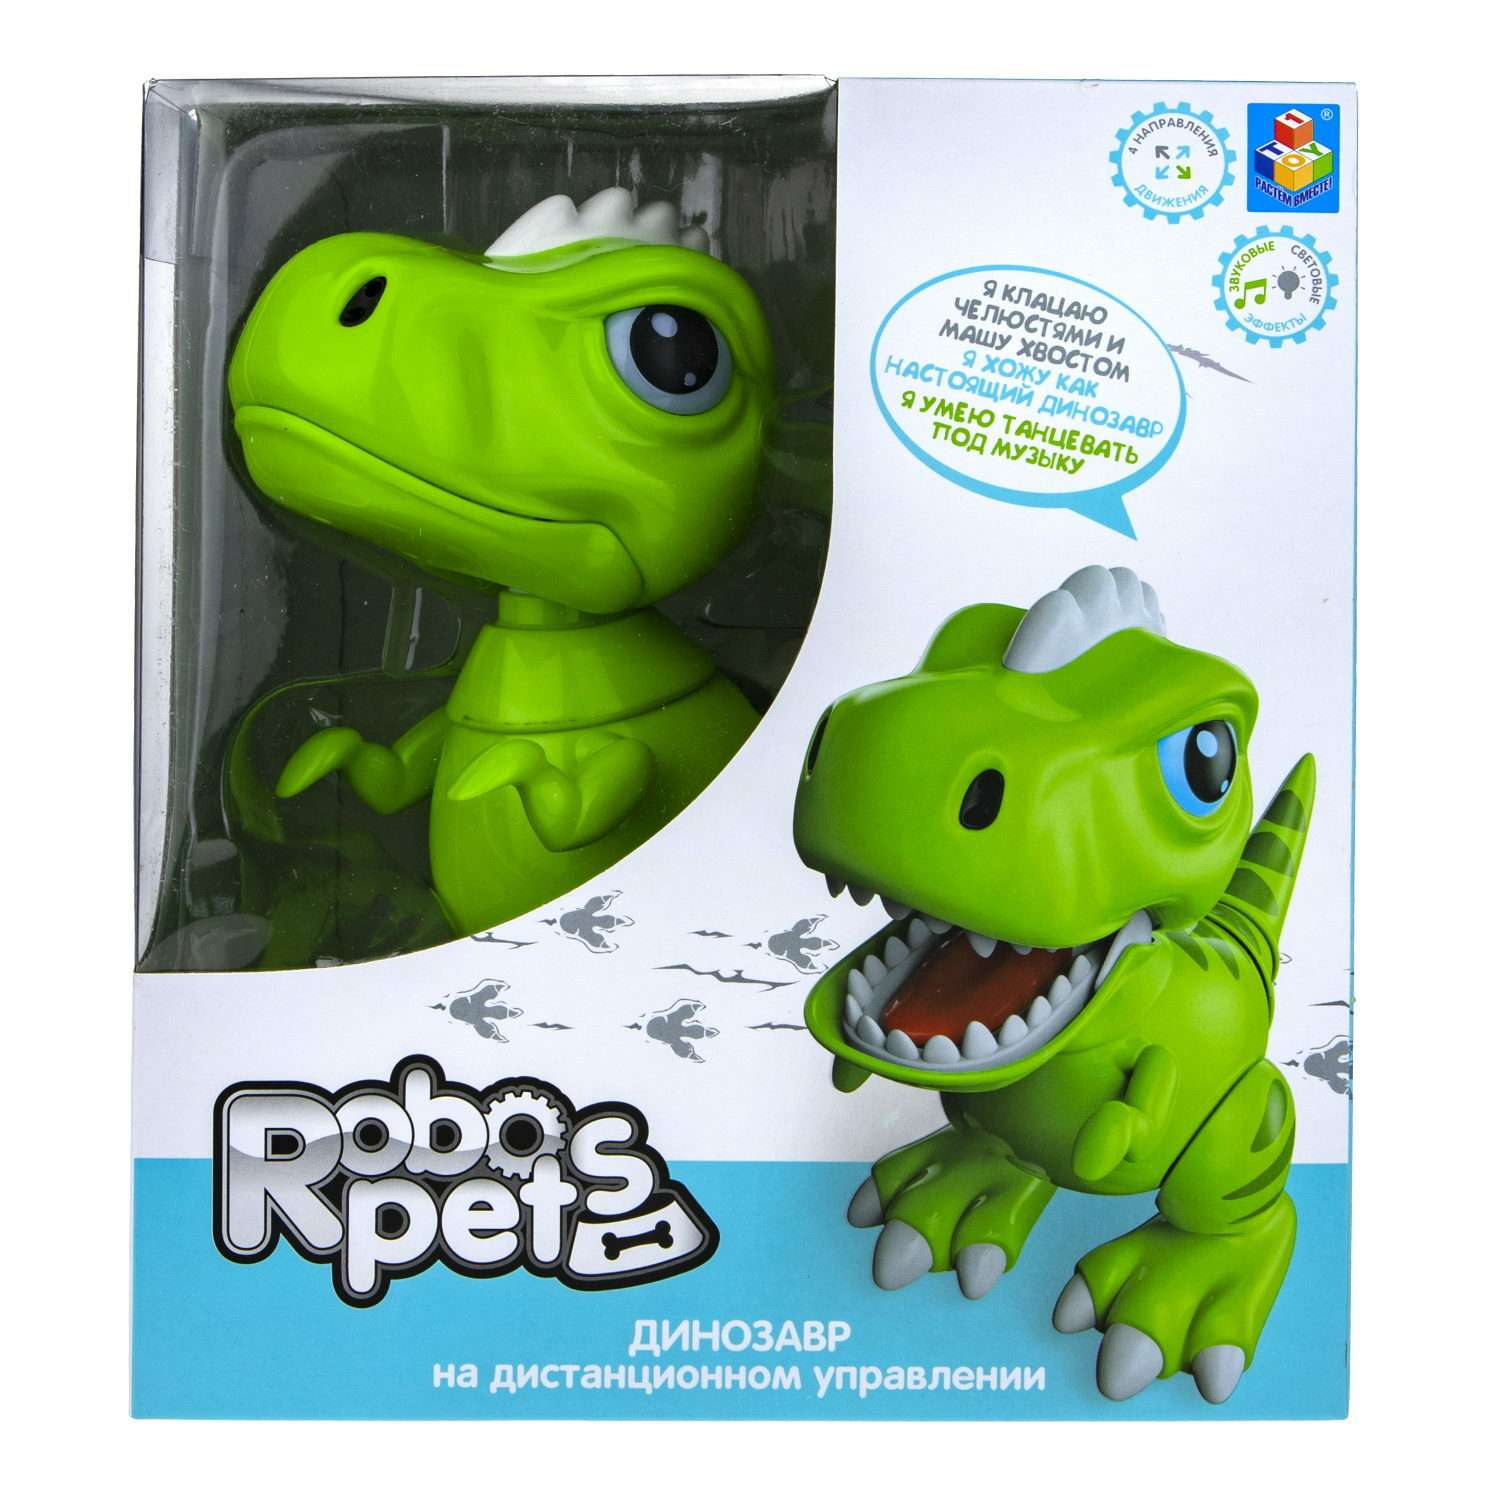 Интерактивная игрушка Robo Pets Динозавр Т-РЕКС зеленый на РУ со световыми звуковыми и эффектами движения - фото 12